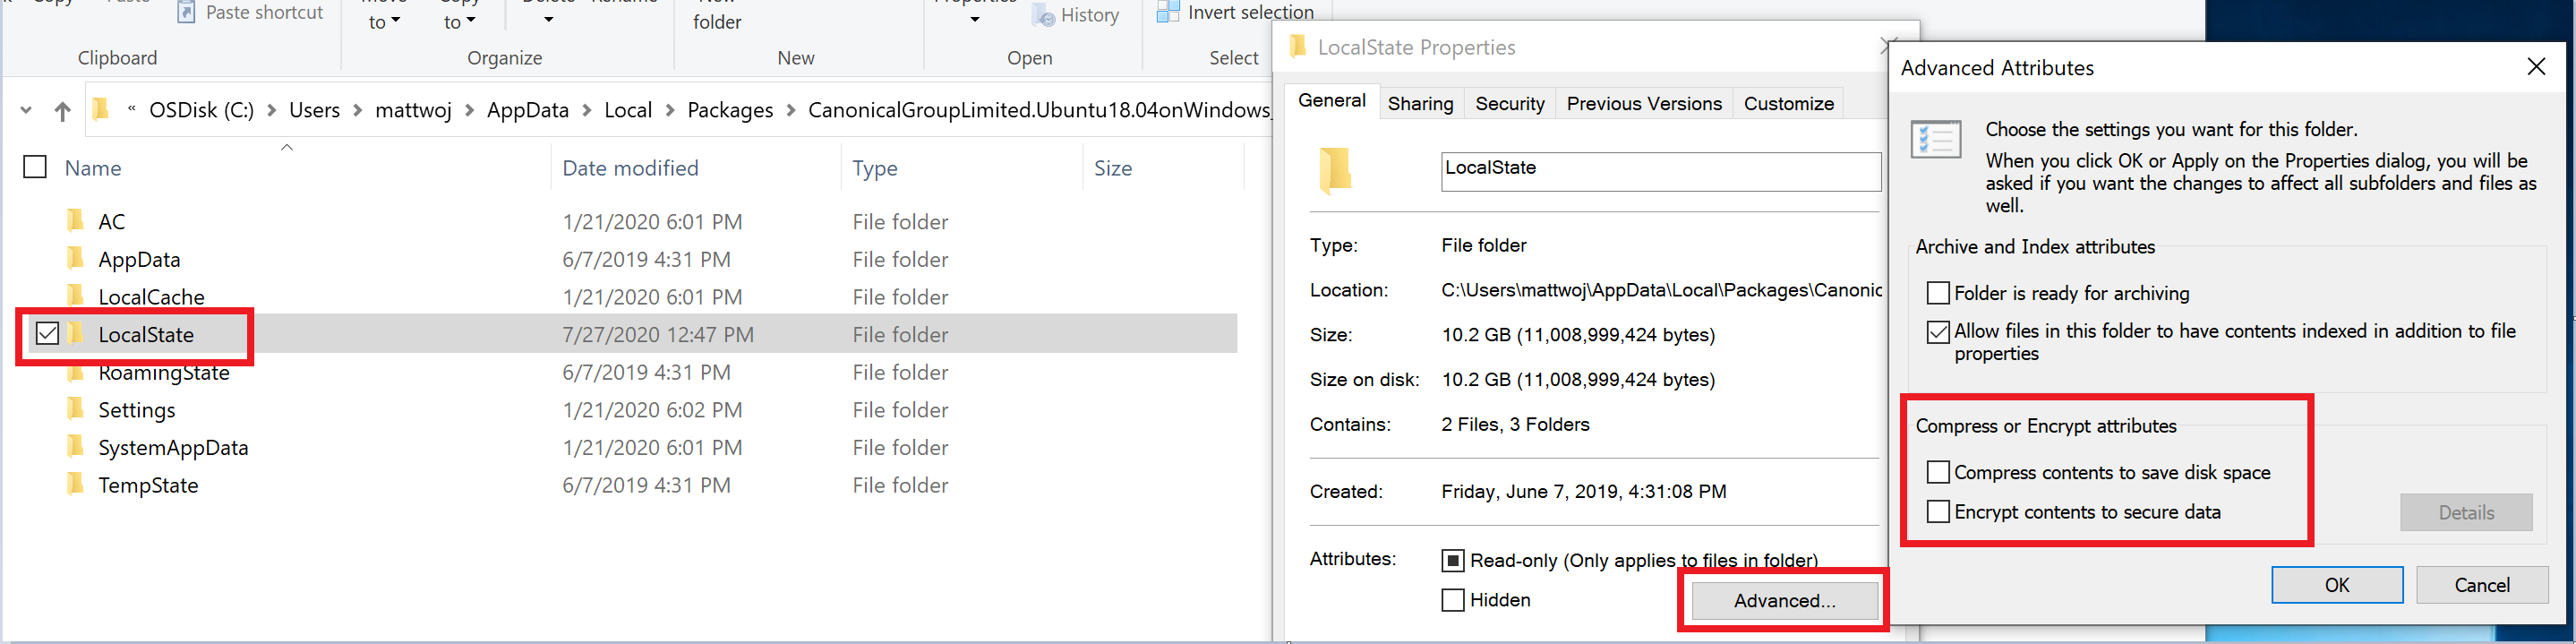 Captura de tela das configurações da propriedade de distribuição do WSL